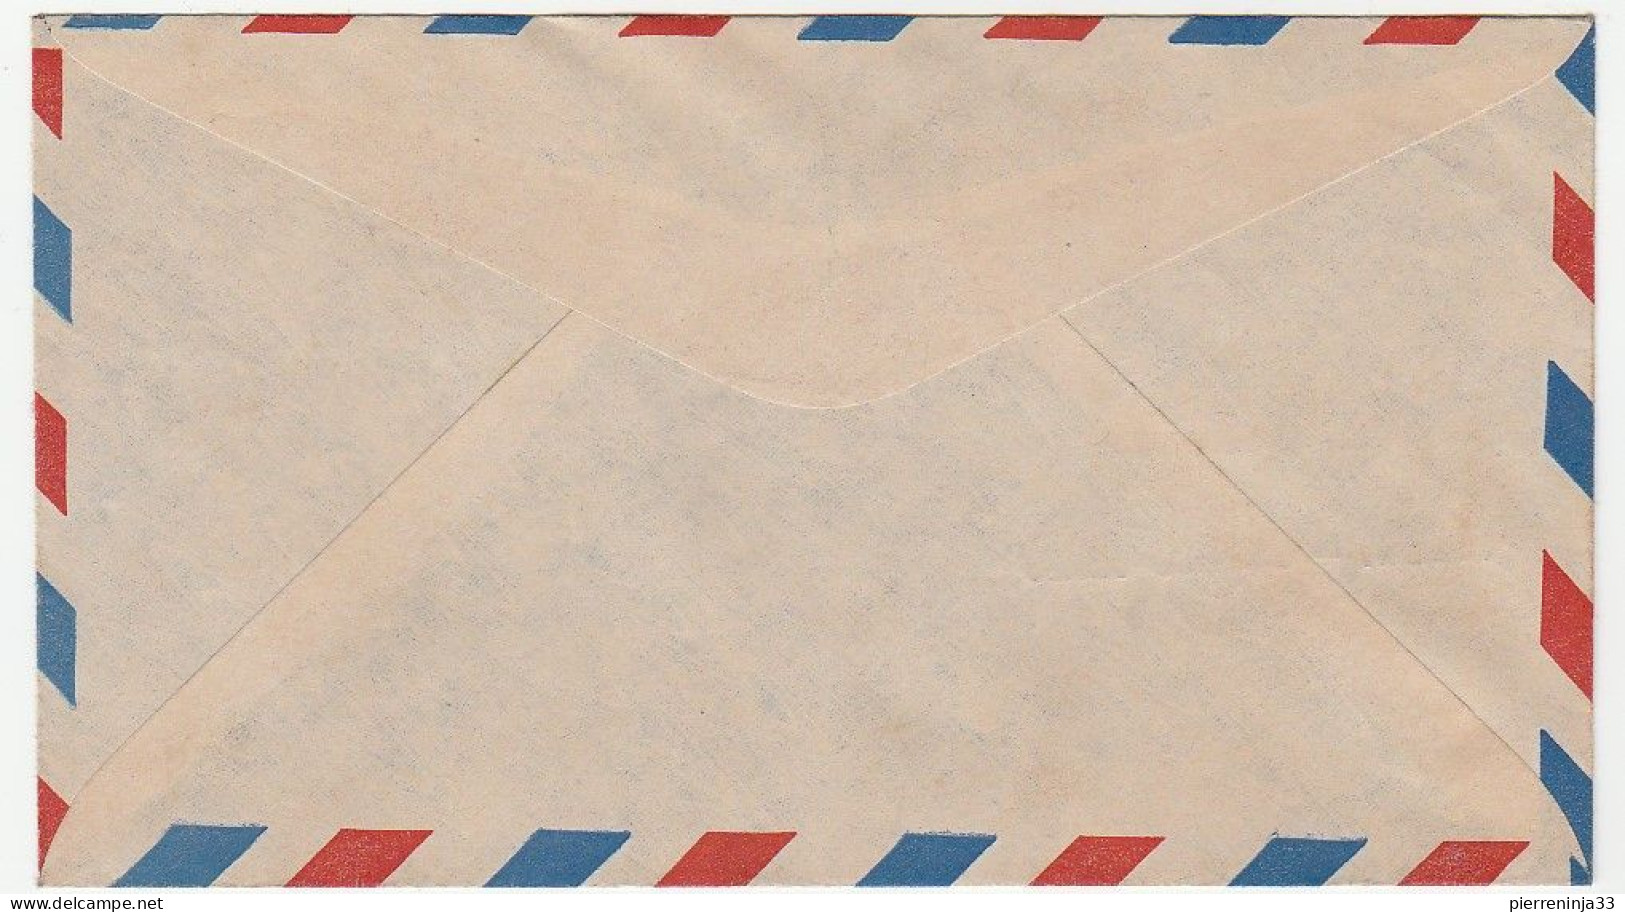 Lettre A.O.F. Avec Cachet "20ème Anniversaire Du Premier Service Aérien Postal Dakar-Buenos Aires" - Briefe U. Dokumente